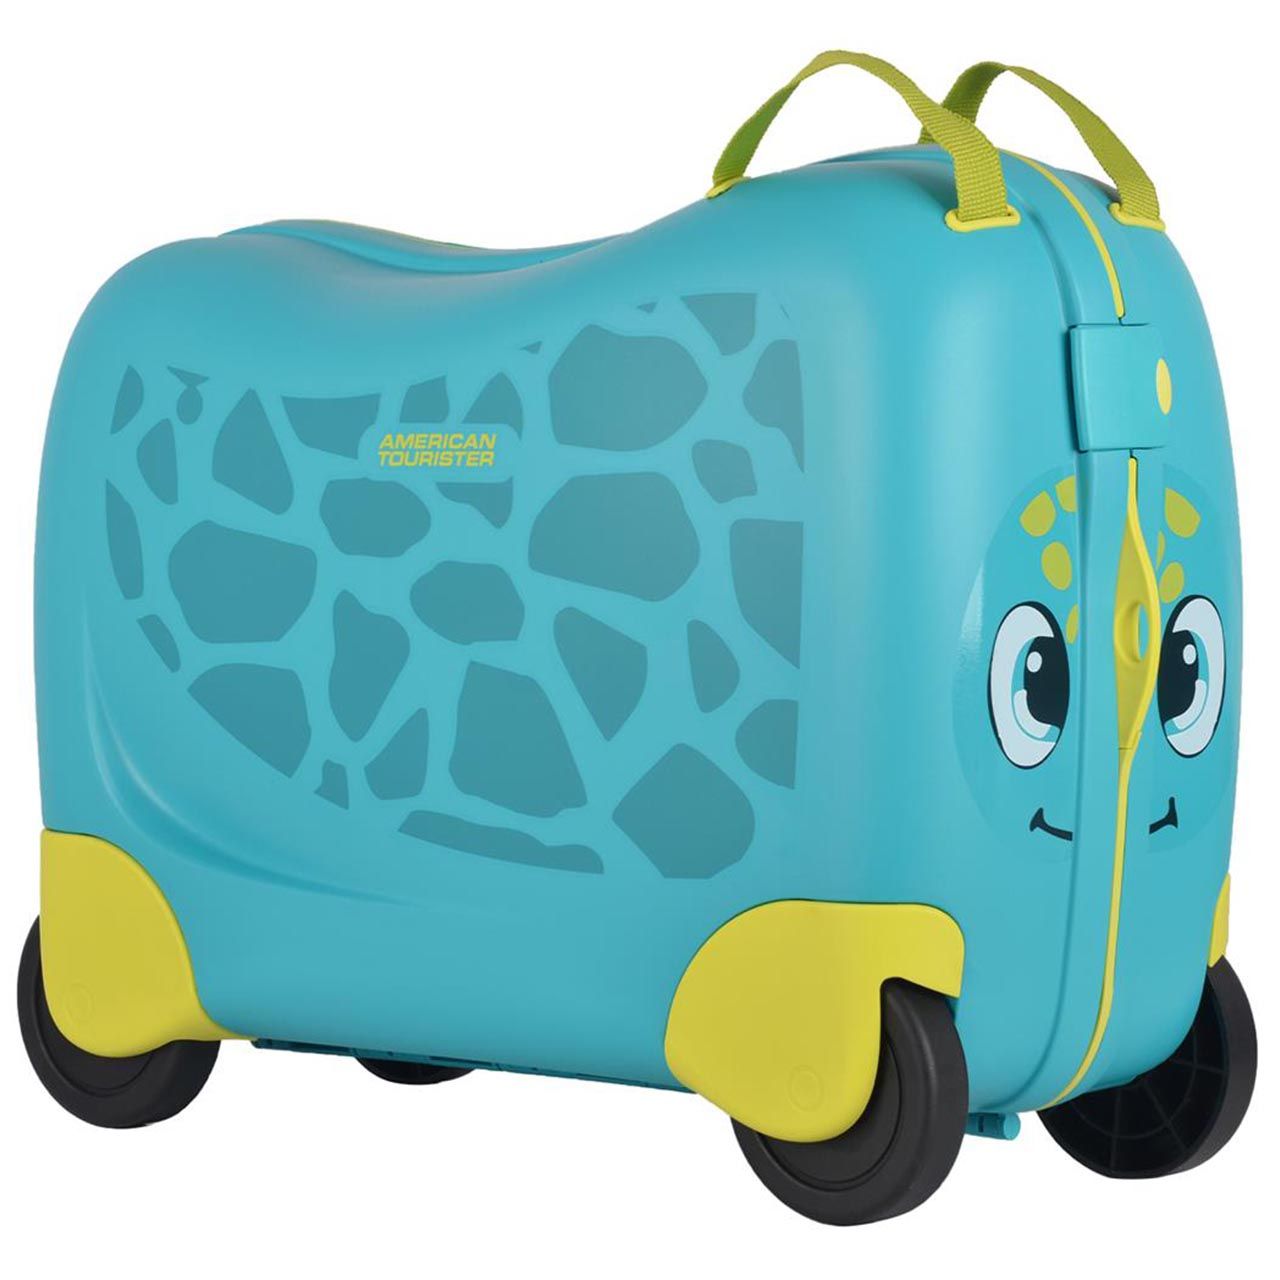 چمدان کودک امریکن توریستر مدل FHO 90012 -  - 1